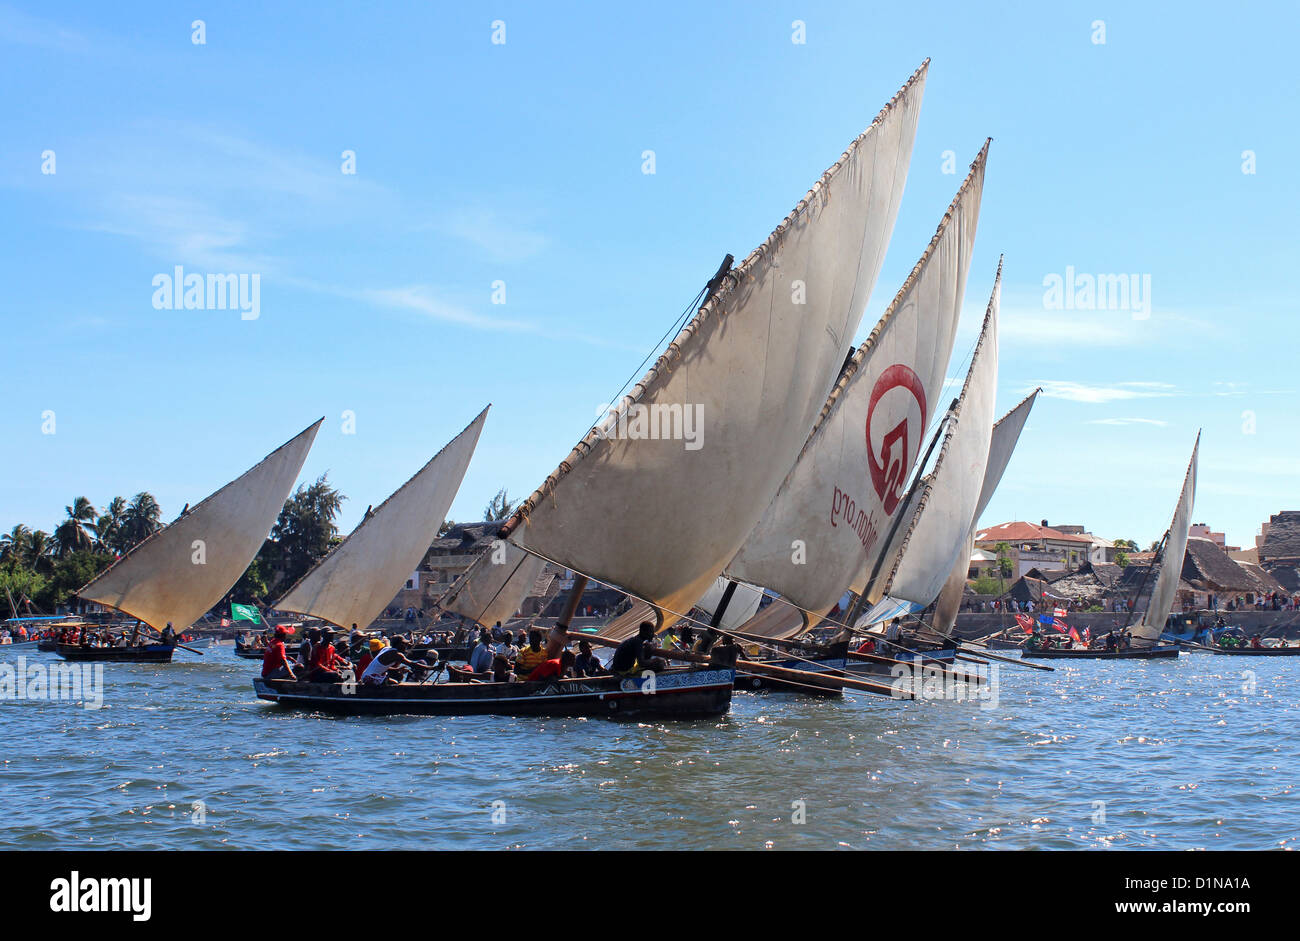 En Dhow Boat Race en el Festival Cultural de Lamu, Isla de Lamu, Kenya, Africa Oriental Foto de stock